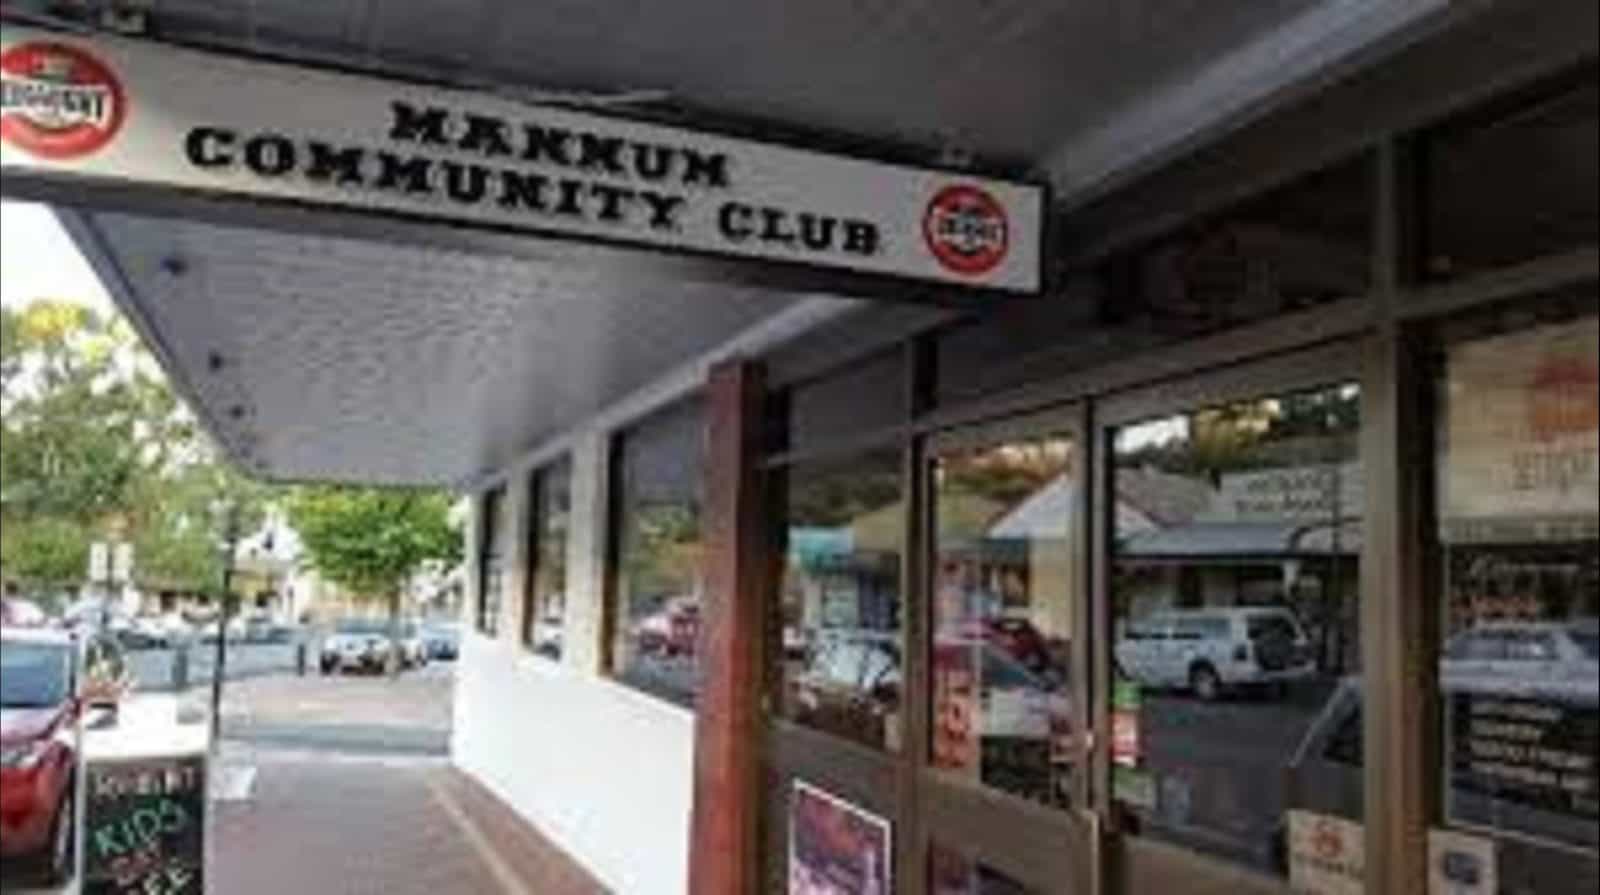 Mannum Club